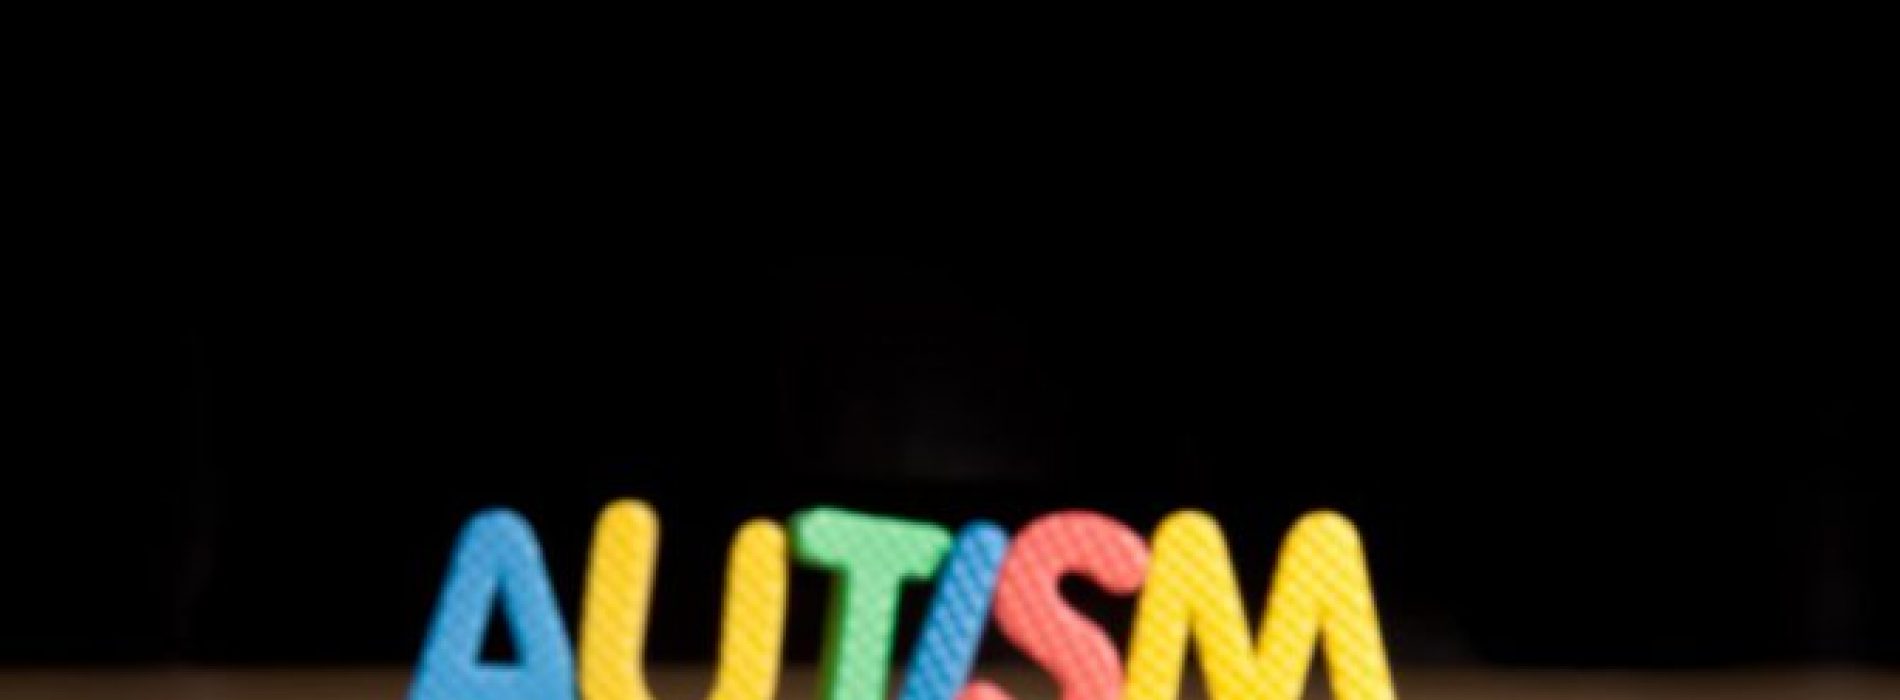 VIDEO: “Dit specifieke vaccin kan direct worden gelinkt aan autisme”